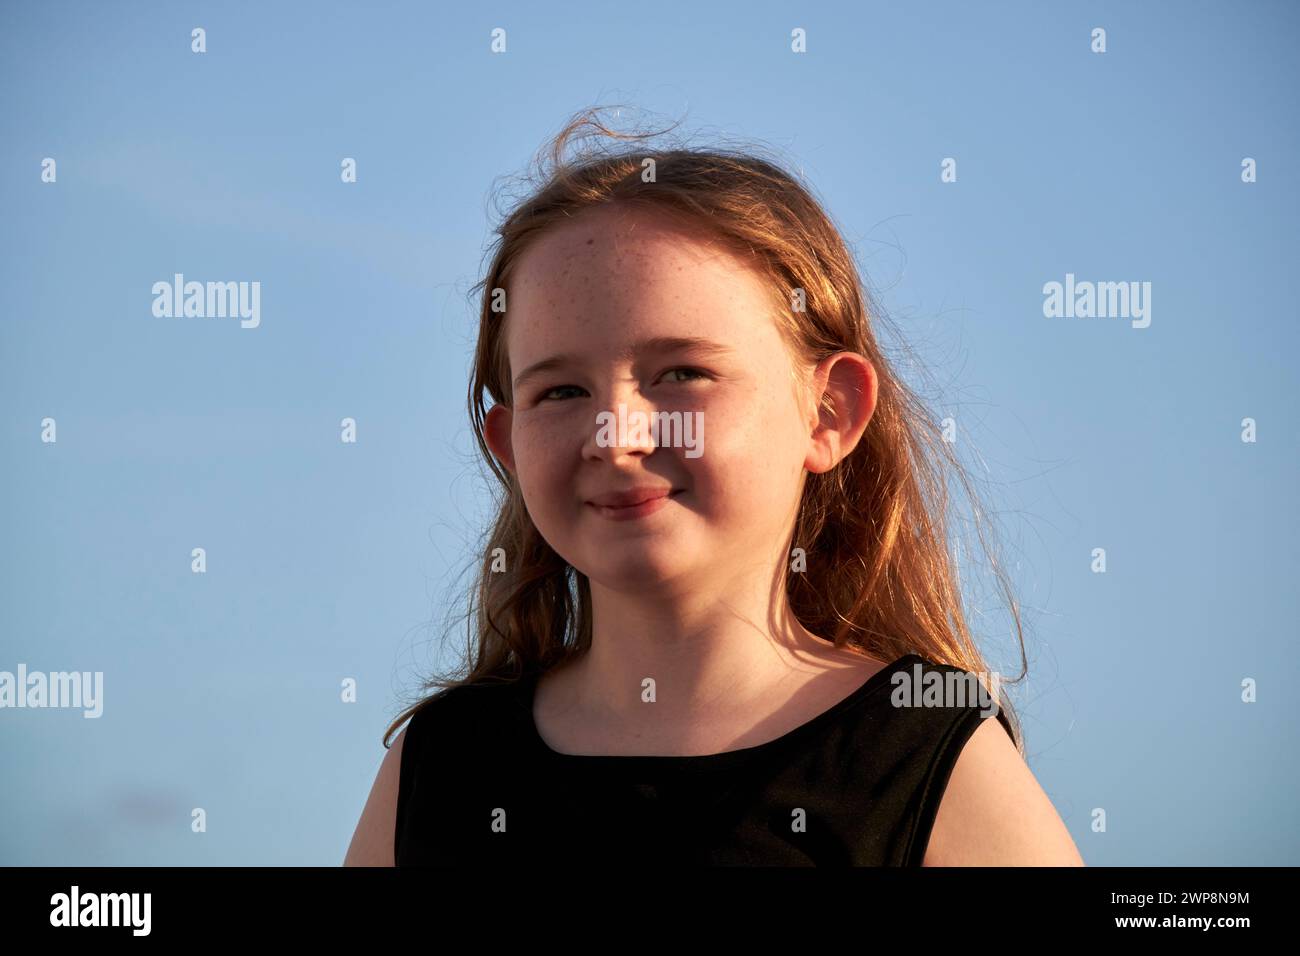 Jeune fille irlandaise britannique de 10 ans portant une robe noire souriante regardant la caméra pendant l'heure d'or coucher du soleil Lanzarote, îles Canaries, espagne Banque D'Images